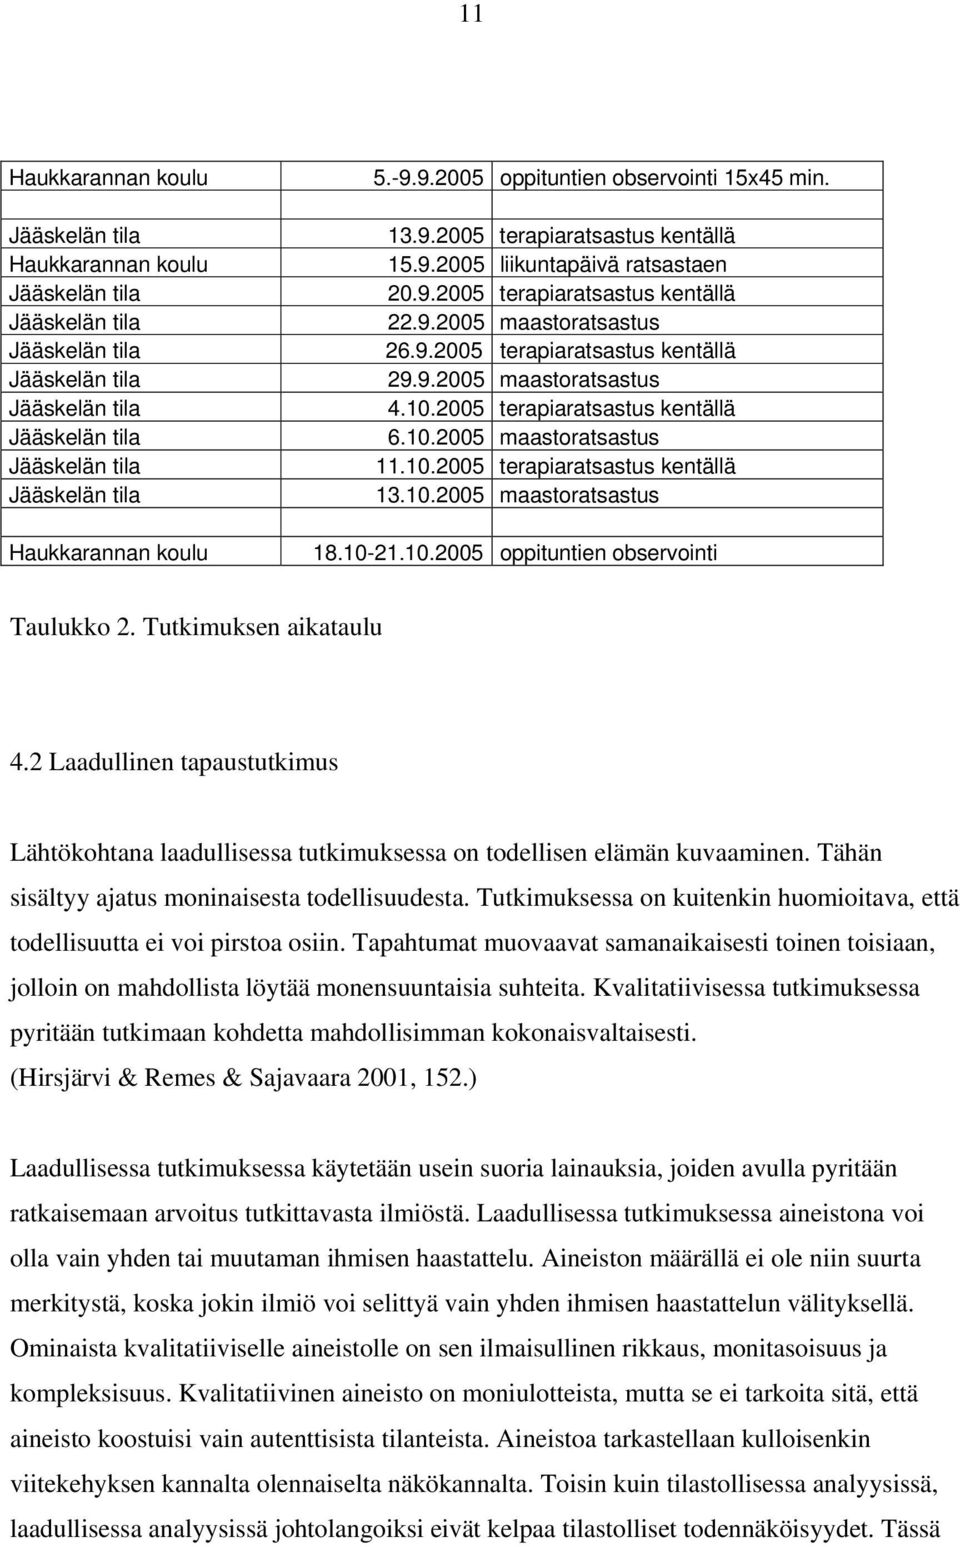 10.2005 terapiaratsastus kentällä Jääskelän tila 13.10.2005 maastoratsastus Haukkarannan koulu 18.10-21.10.2005 oppituntien observointi Taulukko 2. Tutkimuksen aikataulu 4.